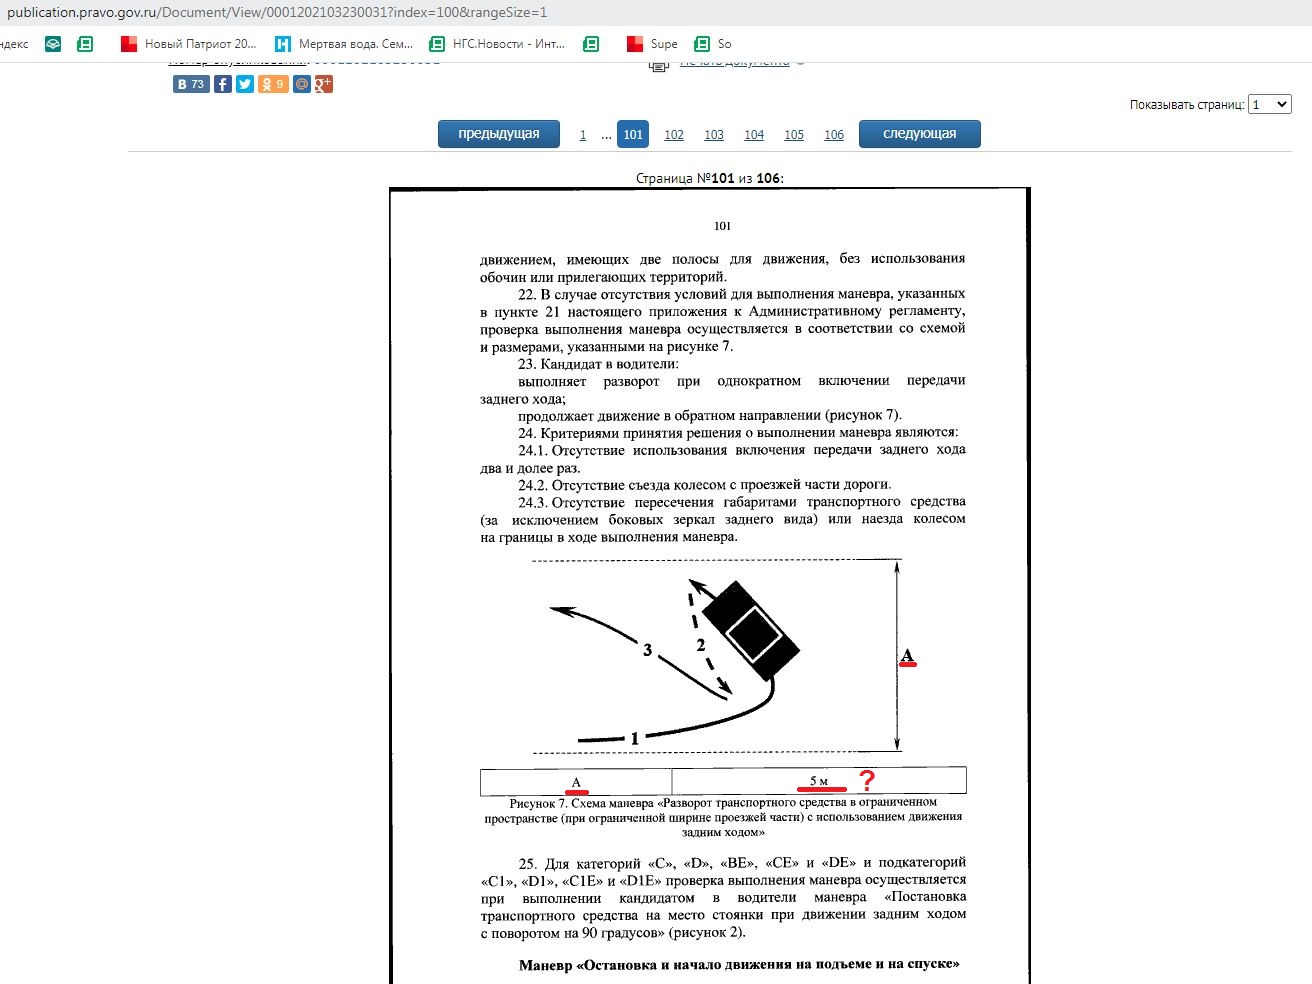 Это скрин официального портала pravo.gov.ru, на котором опубликовали новый регламент: обратите внимание, что ширина «дворика» теперь — 5 метров. Развернуться на таком пятачке по предложенной схеме на автомобиле длиной 4,5 метра (средний седан) невозможно